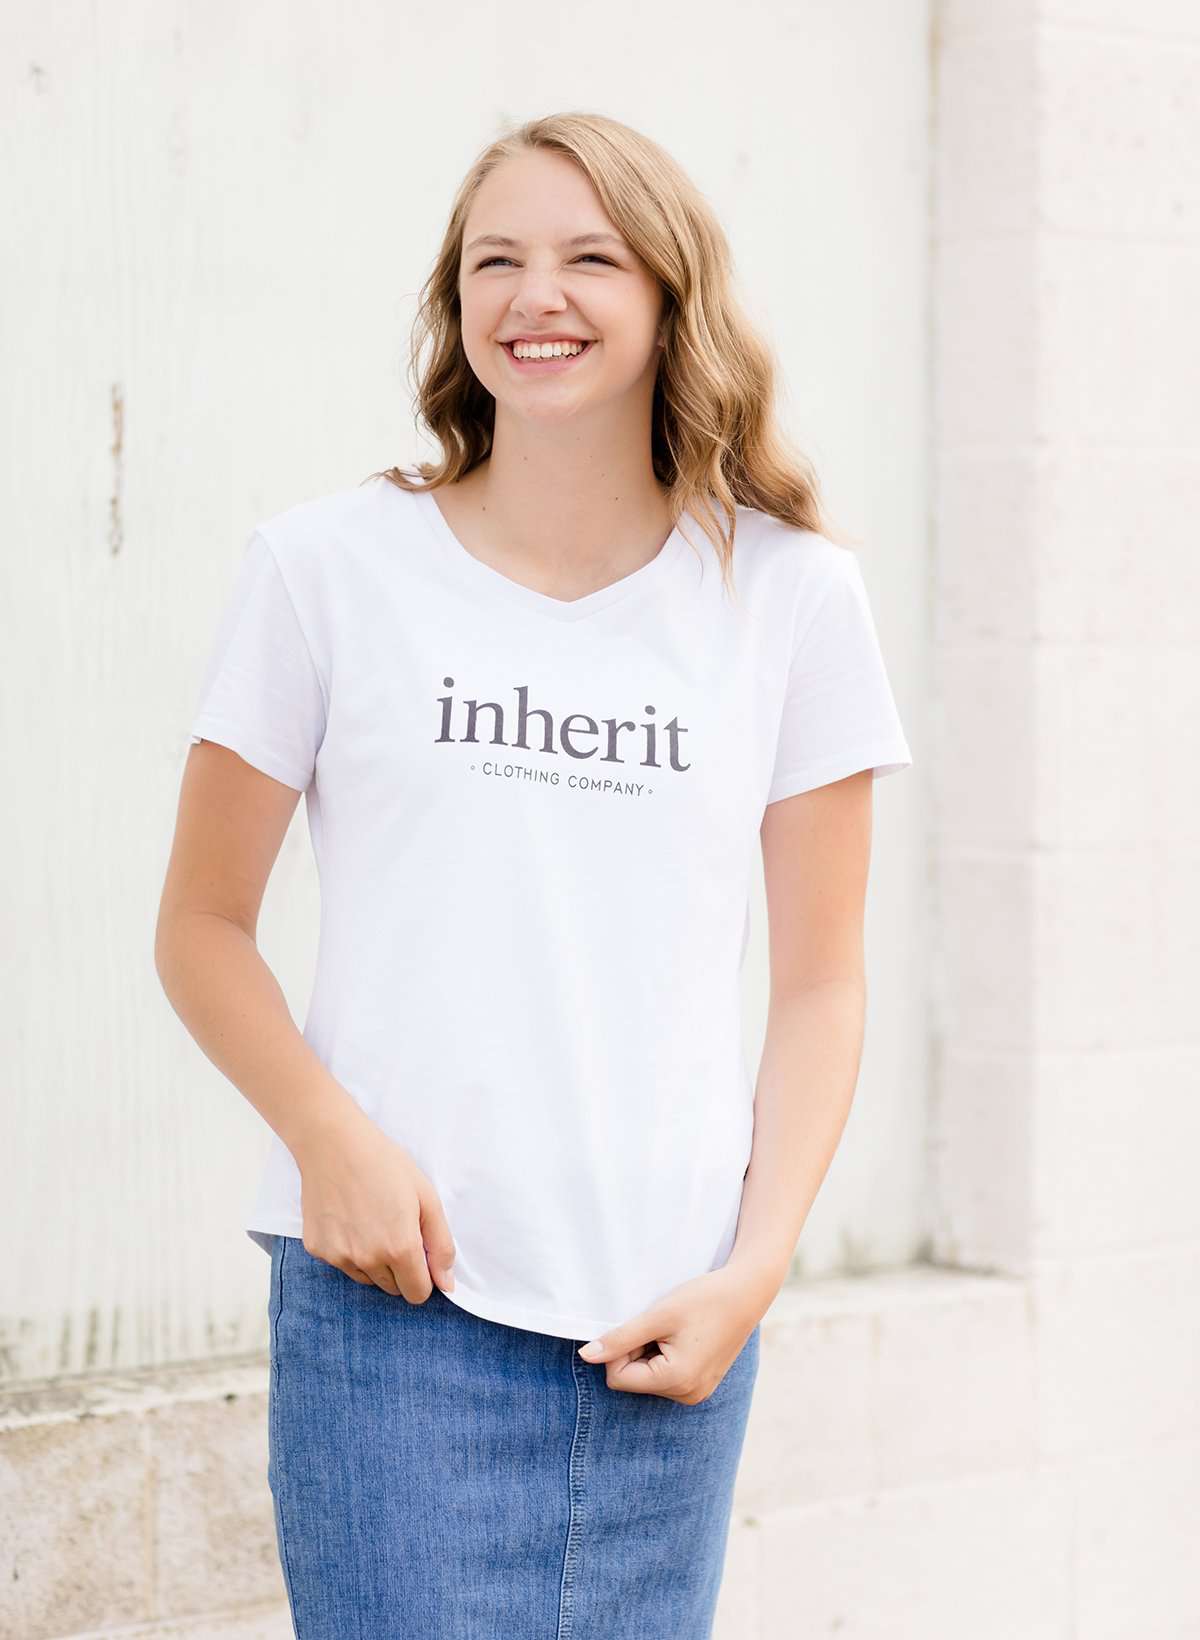 White modest v-neck t-shirt with inherit logo across the chest.